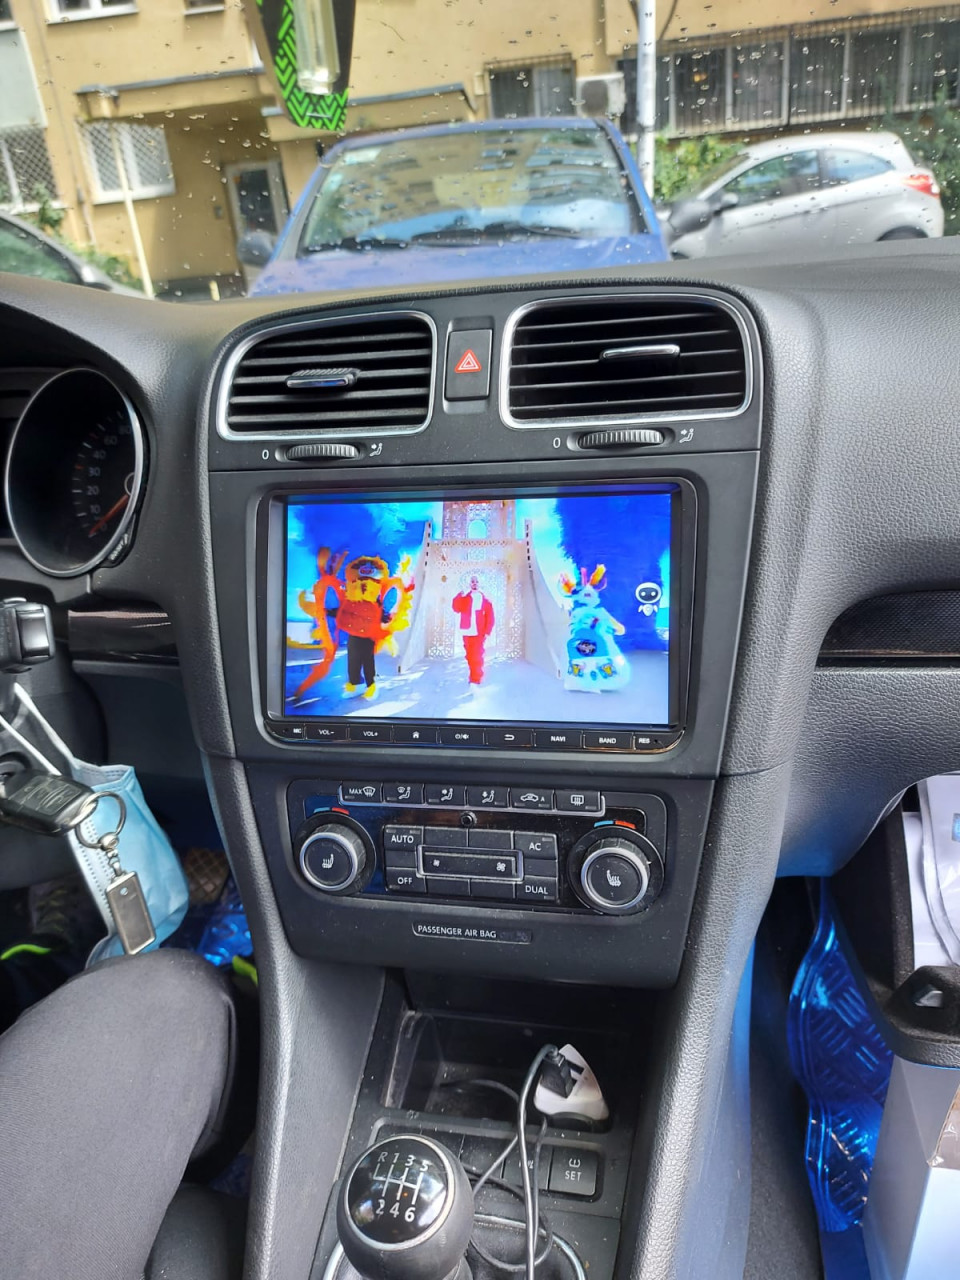 grip Buitenshuis Bomen planten Navigatie Android VW Jetta Golf 6 display 9"